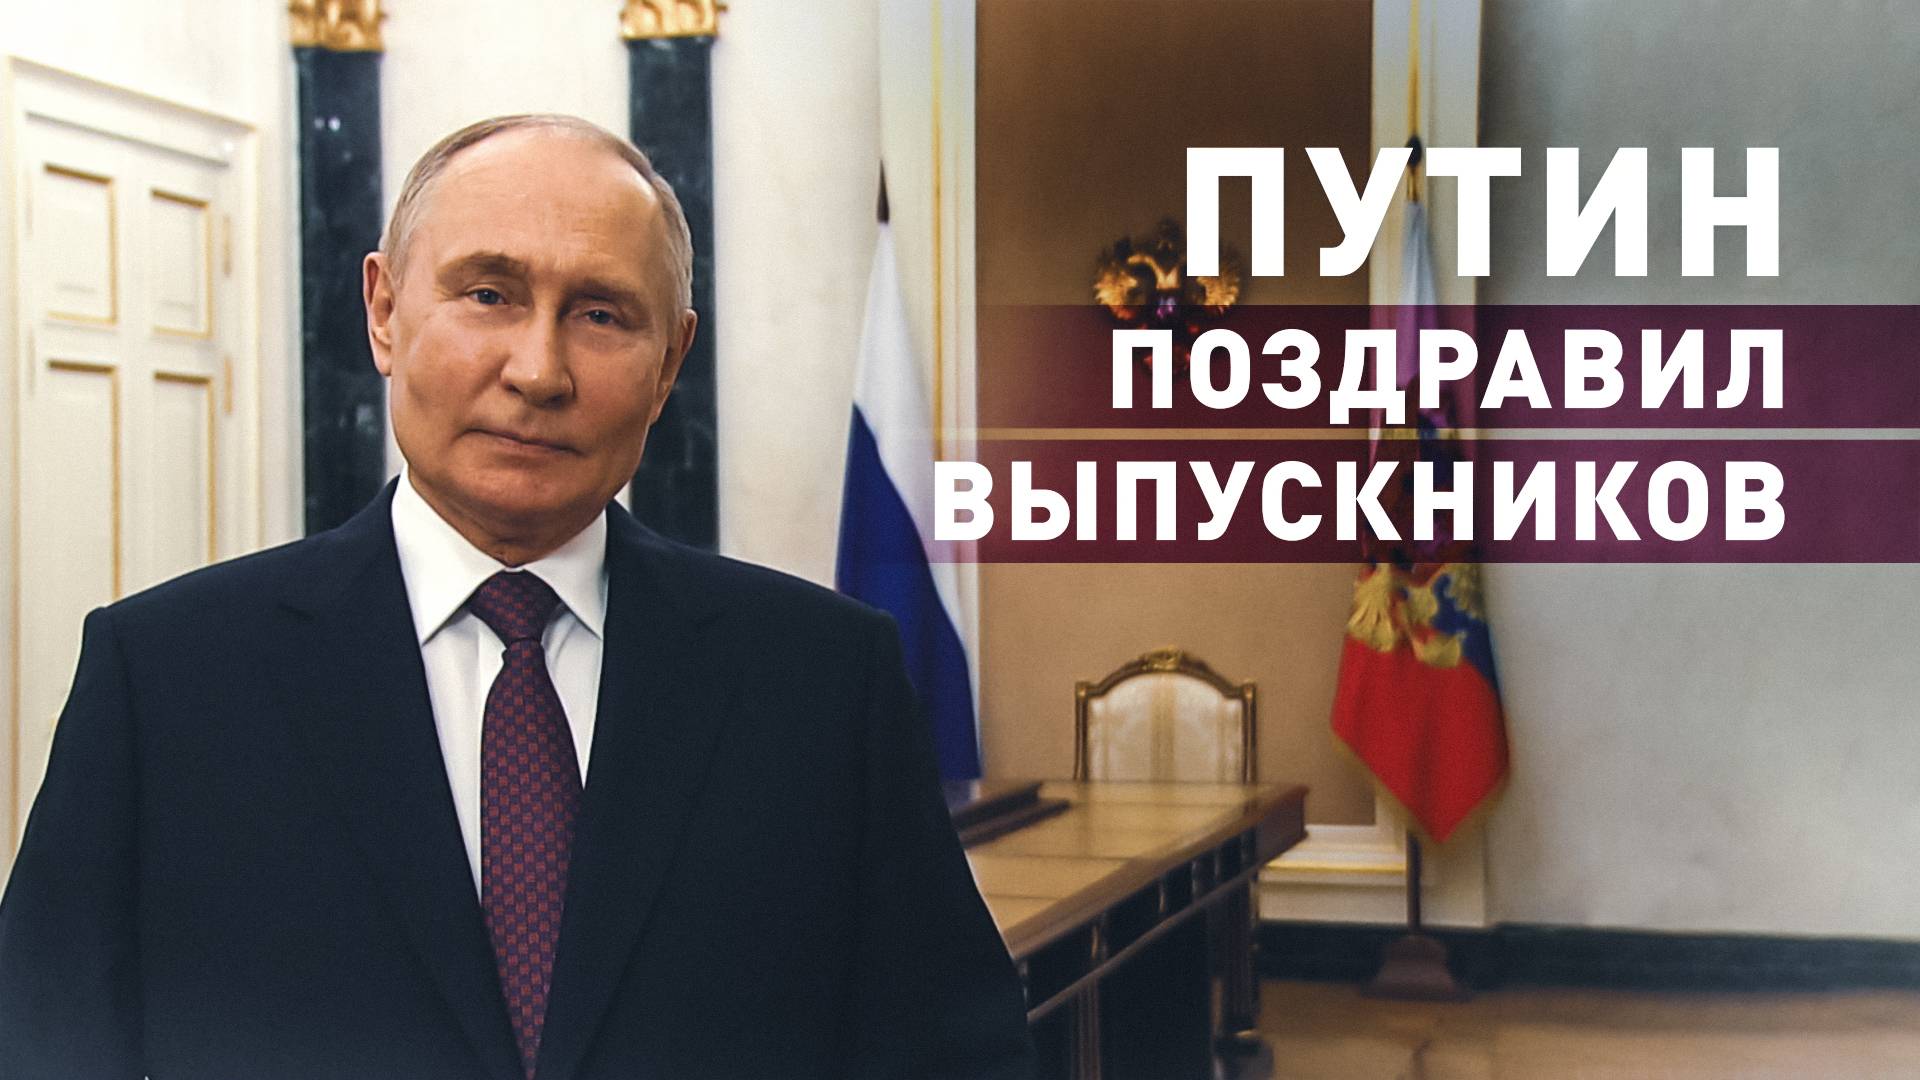 «Самое главное — реализовать своё призвание»: Путин поздравил выпускников школ